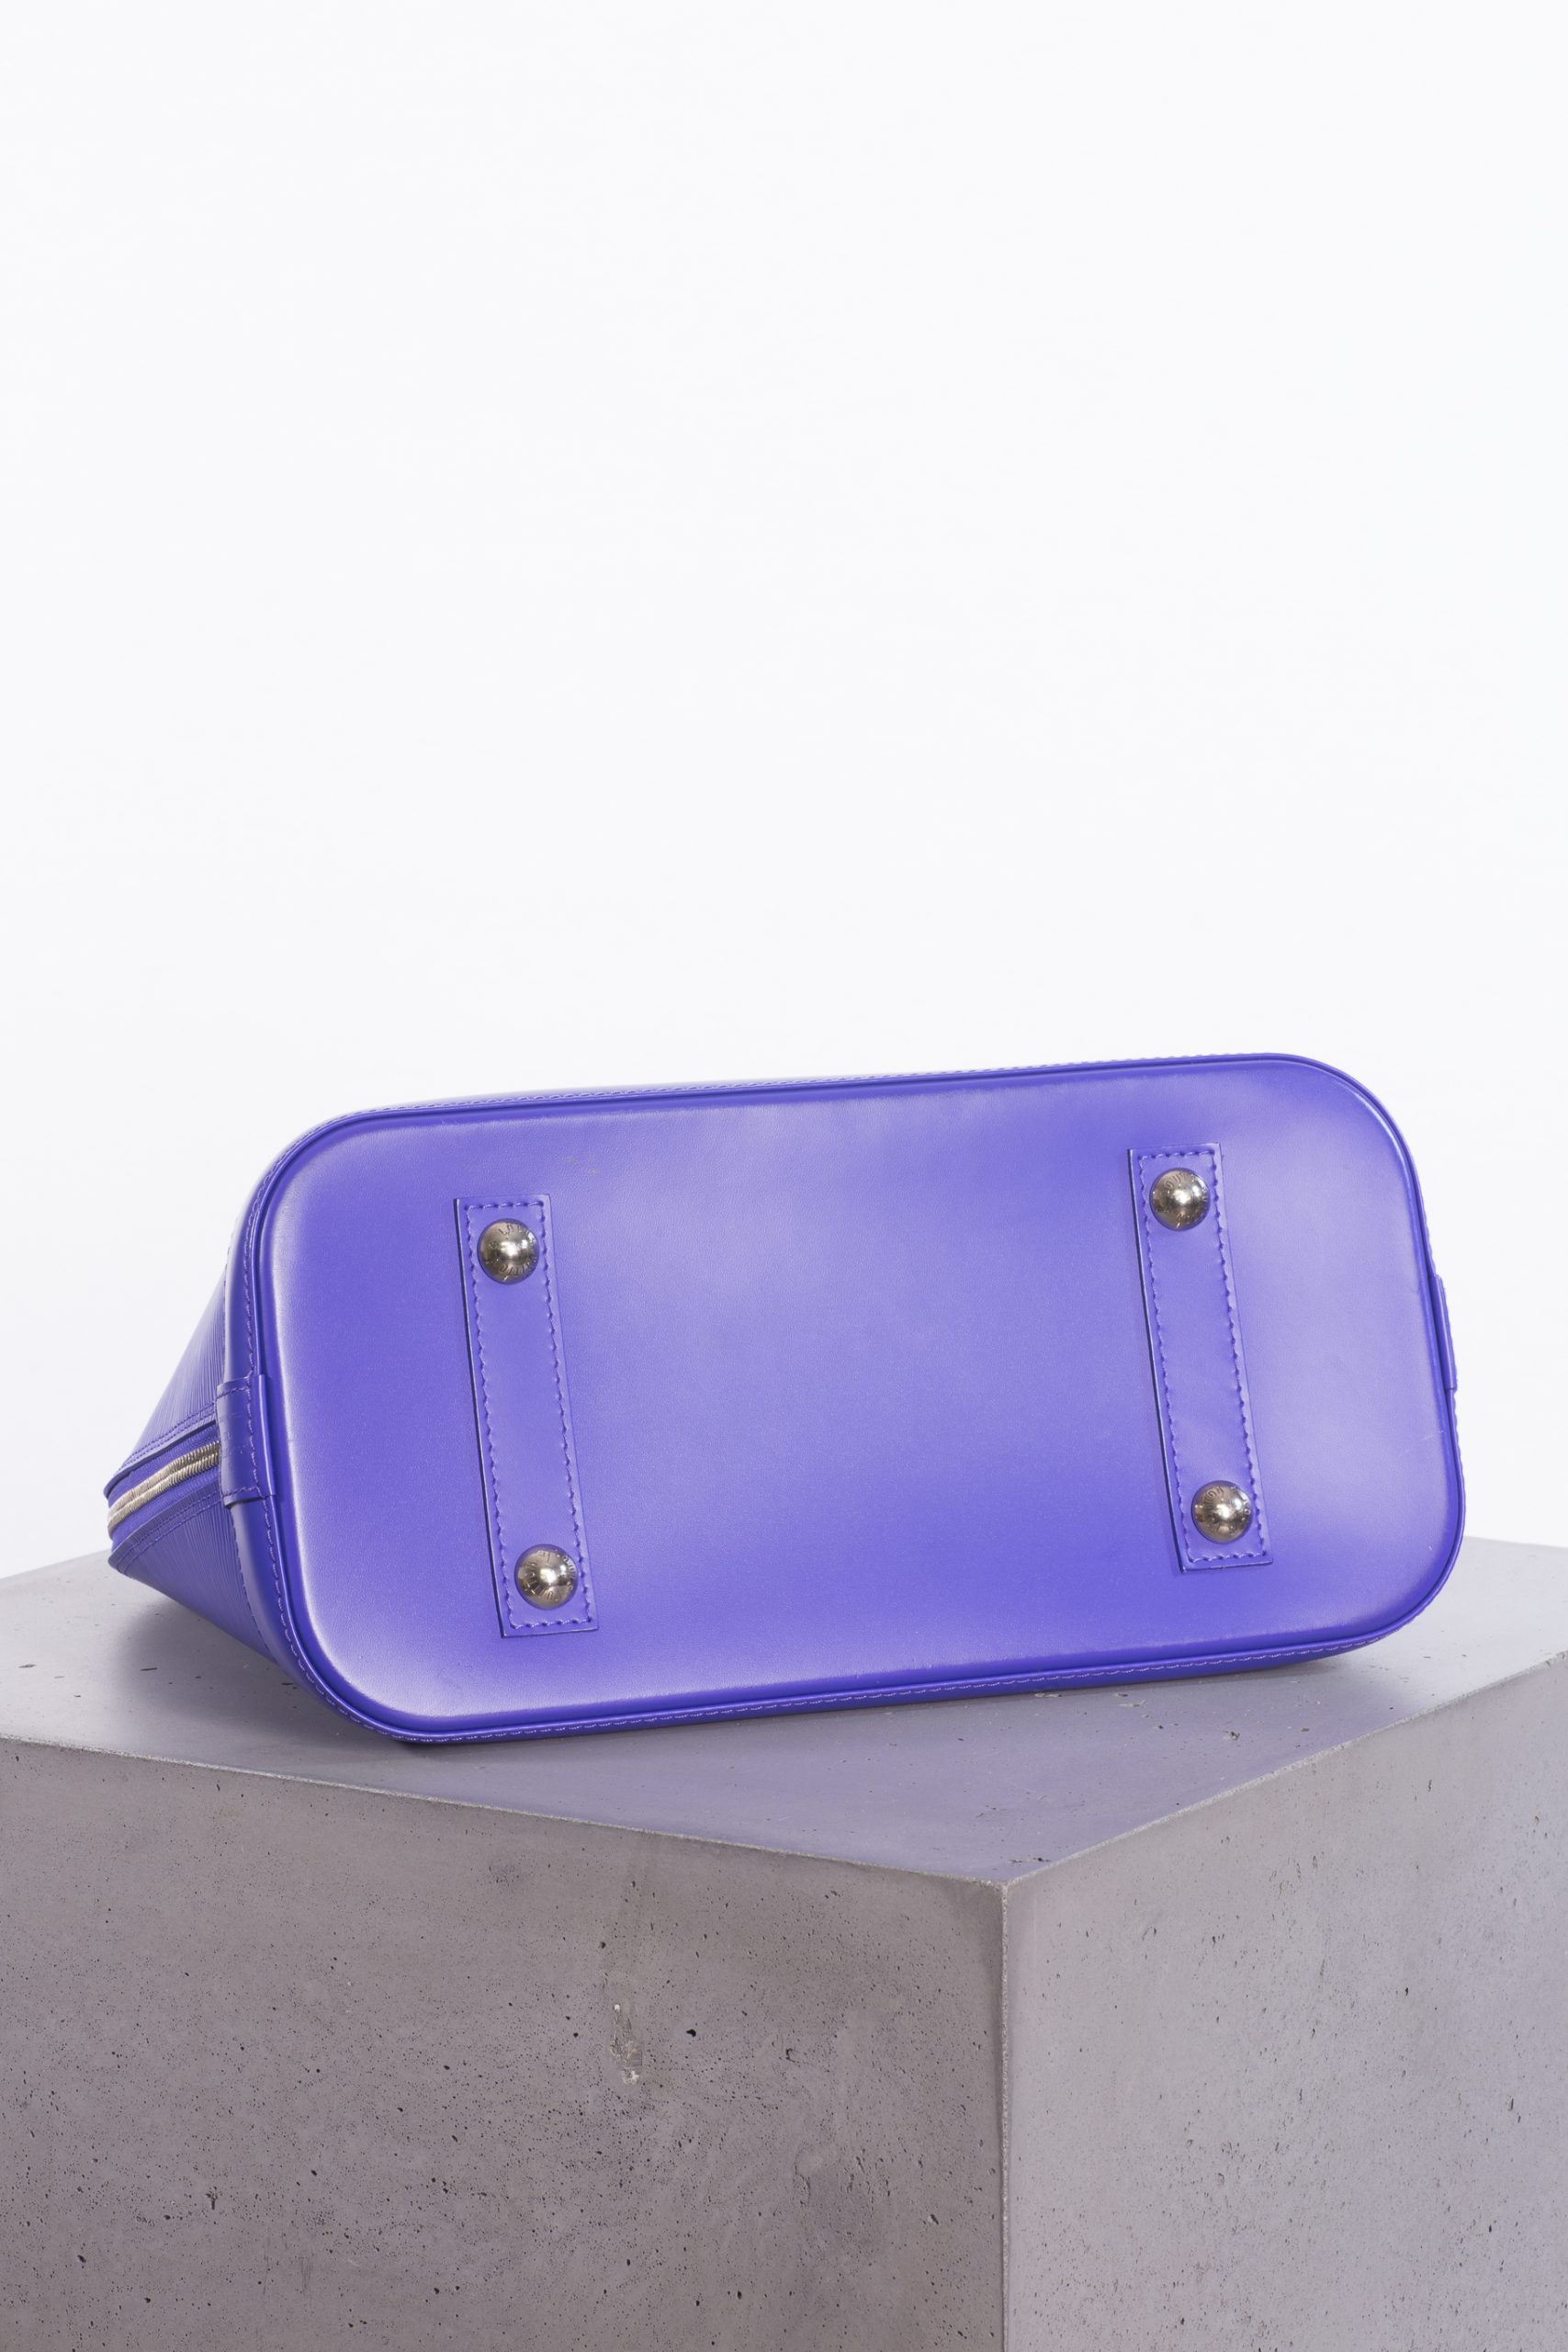 Louis Vuitton Alma Epi Pm Purple